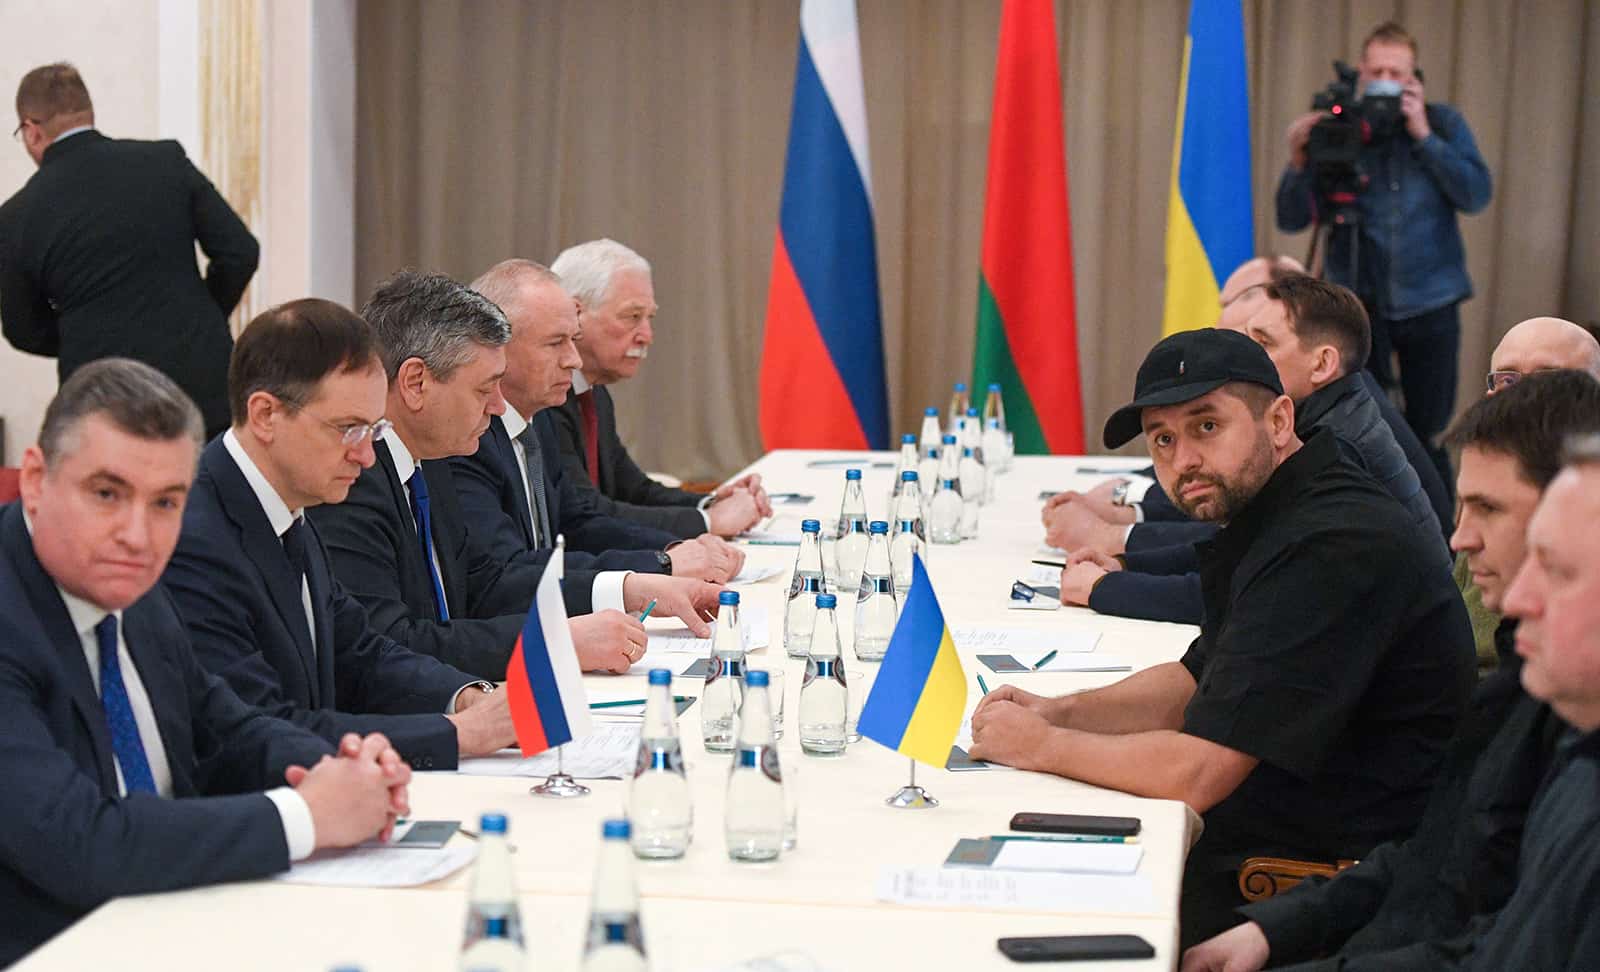 Phái đoàn Nga (bên trái) và phái đoàn Ukraine tham hội đàm ở Belarus hôm 28/2. Ảnh: Tass-Reuters